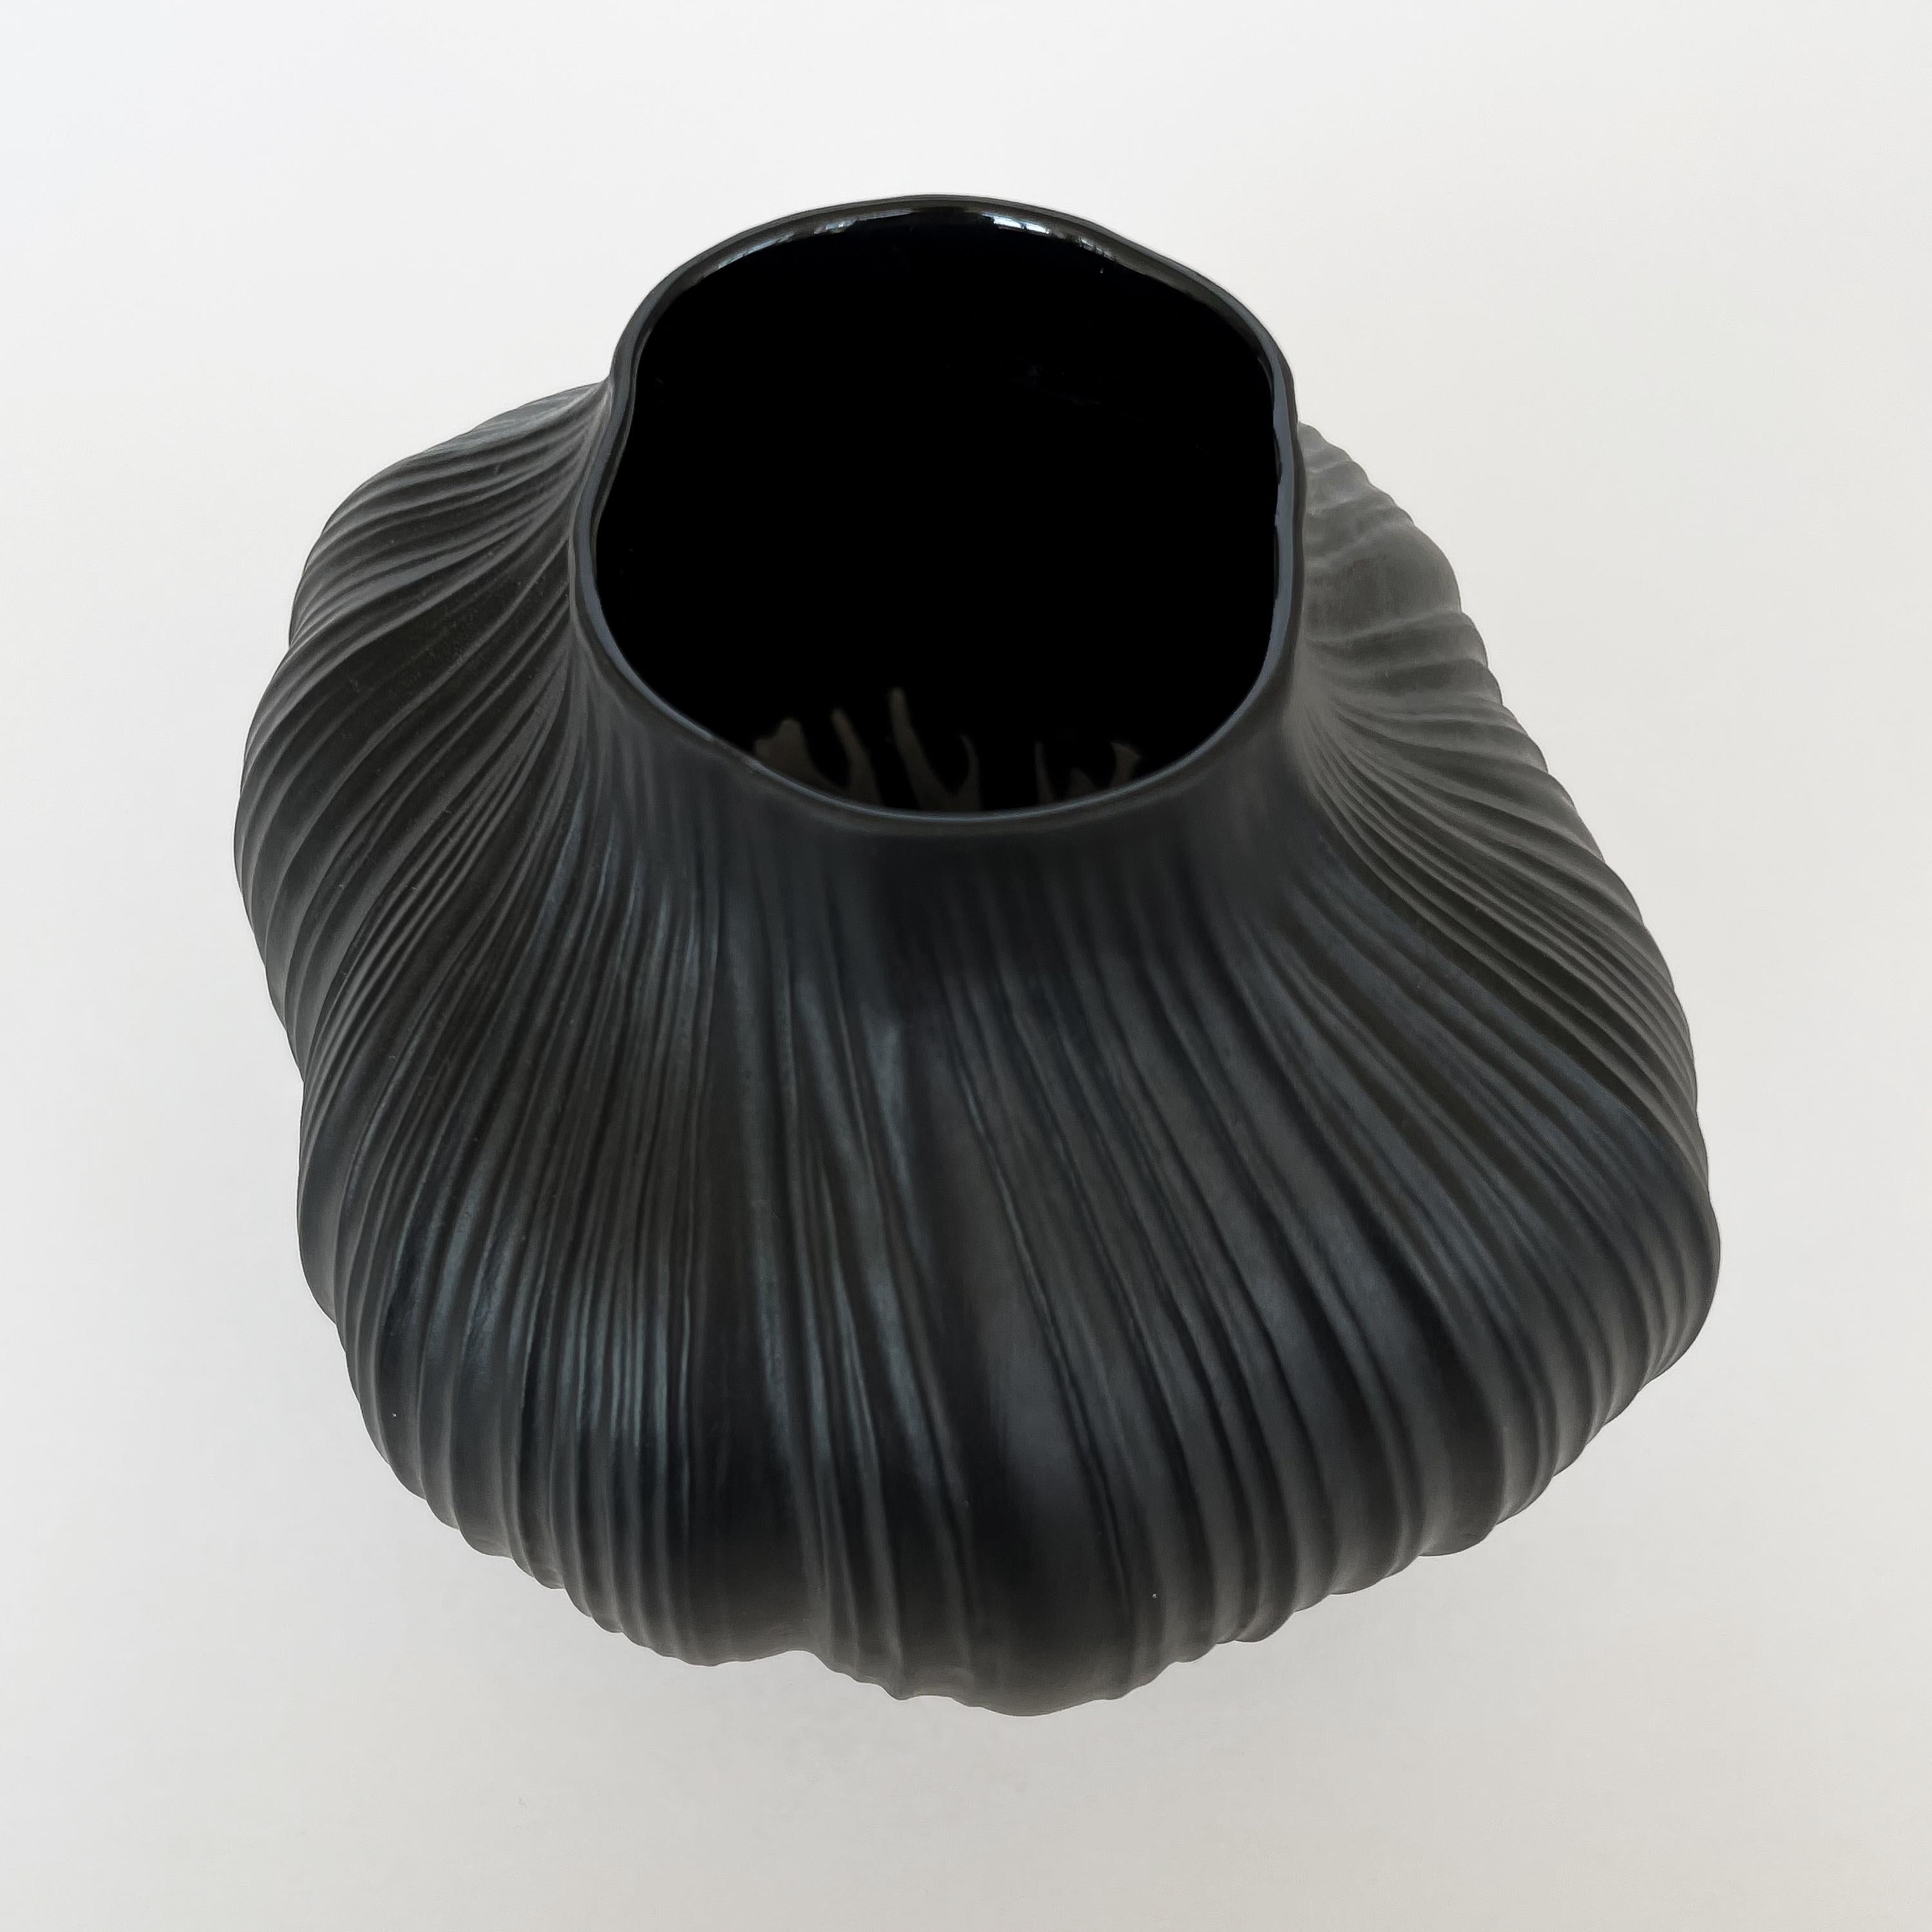 Martin Freyer Black Unglazed Porcelain Plissee Vase for Rosenthal 1